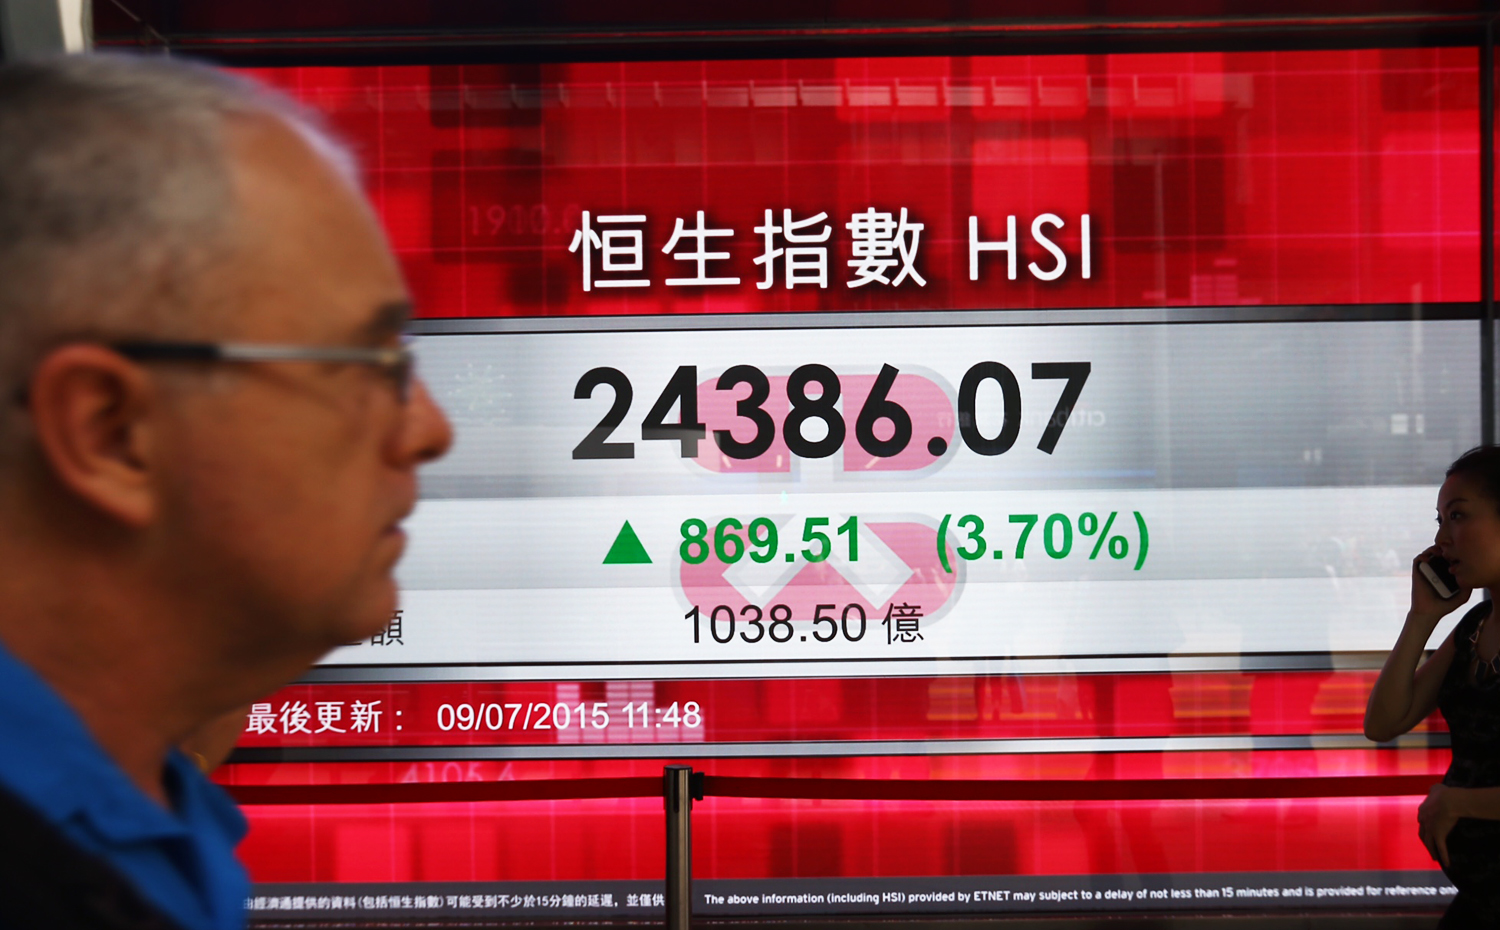 The Hang Seng Index rose 3.70 per cent this morning. Photo: Sam Tsang